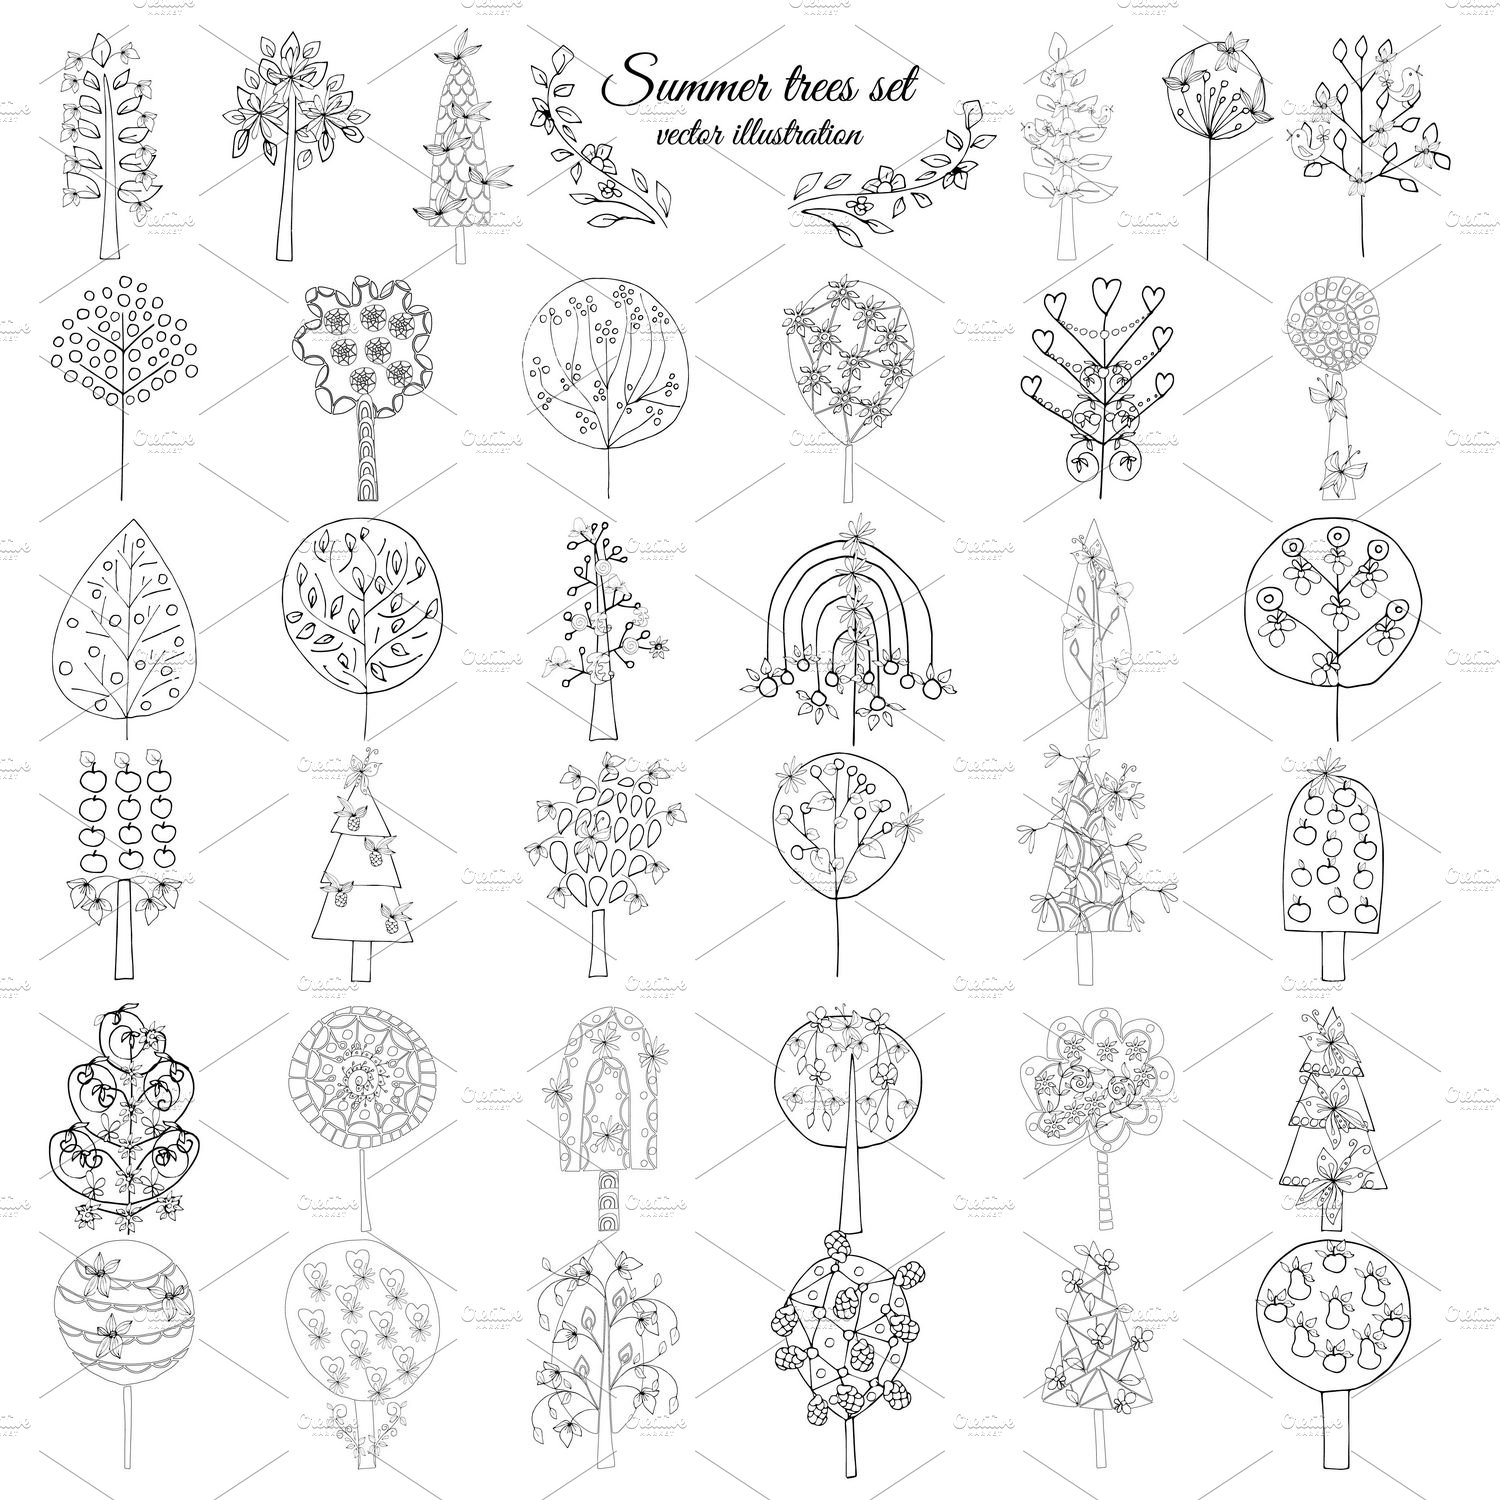 Monochrome Floral Elements Set cover image.